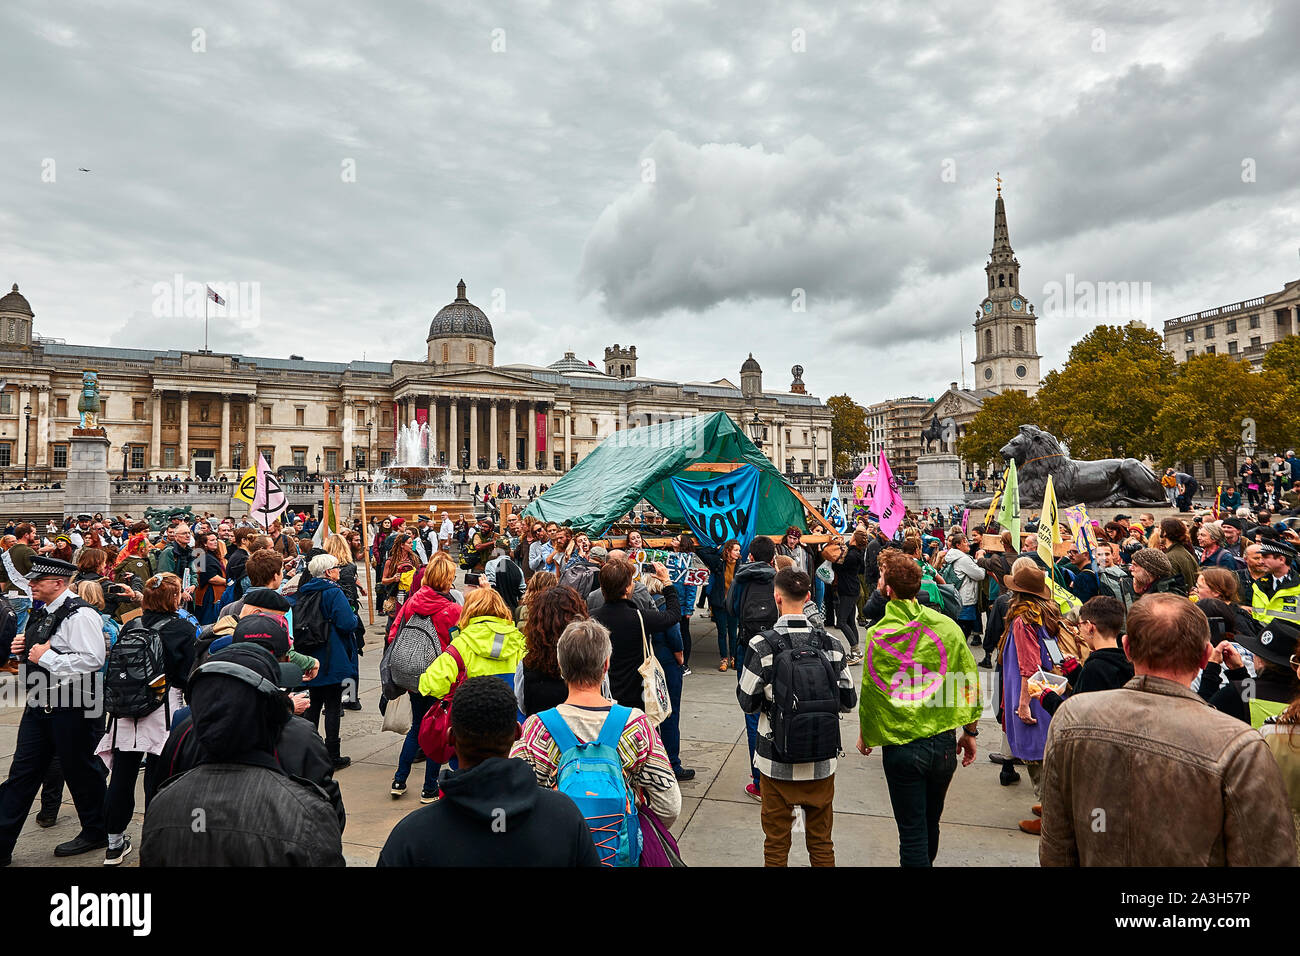 Londres, Reino Unido - Oct 8, 2019: Las multitudes rodean una marquesina de madera erigida en el segundo día de una ocupación de Trafalgar Square por activistas de extinción rebelión. Foto de stock